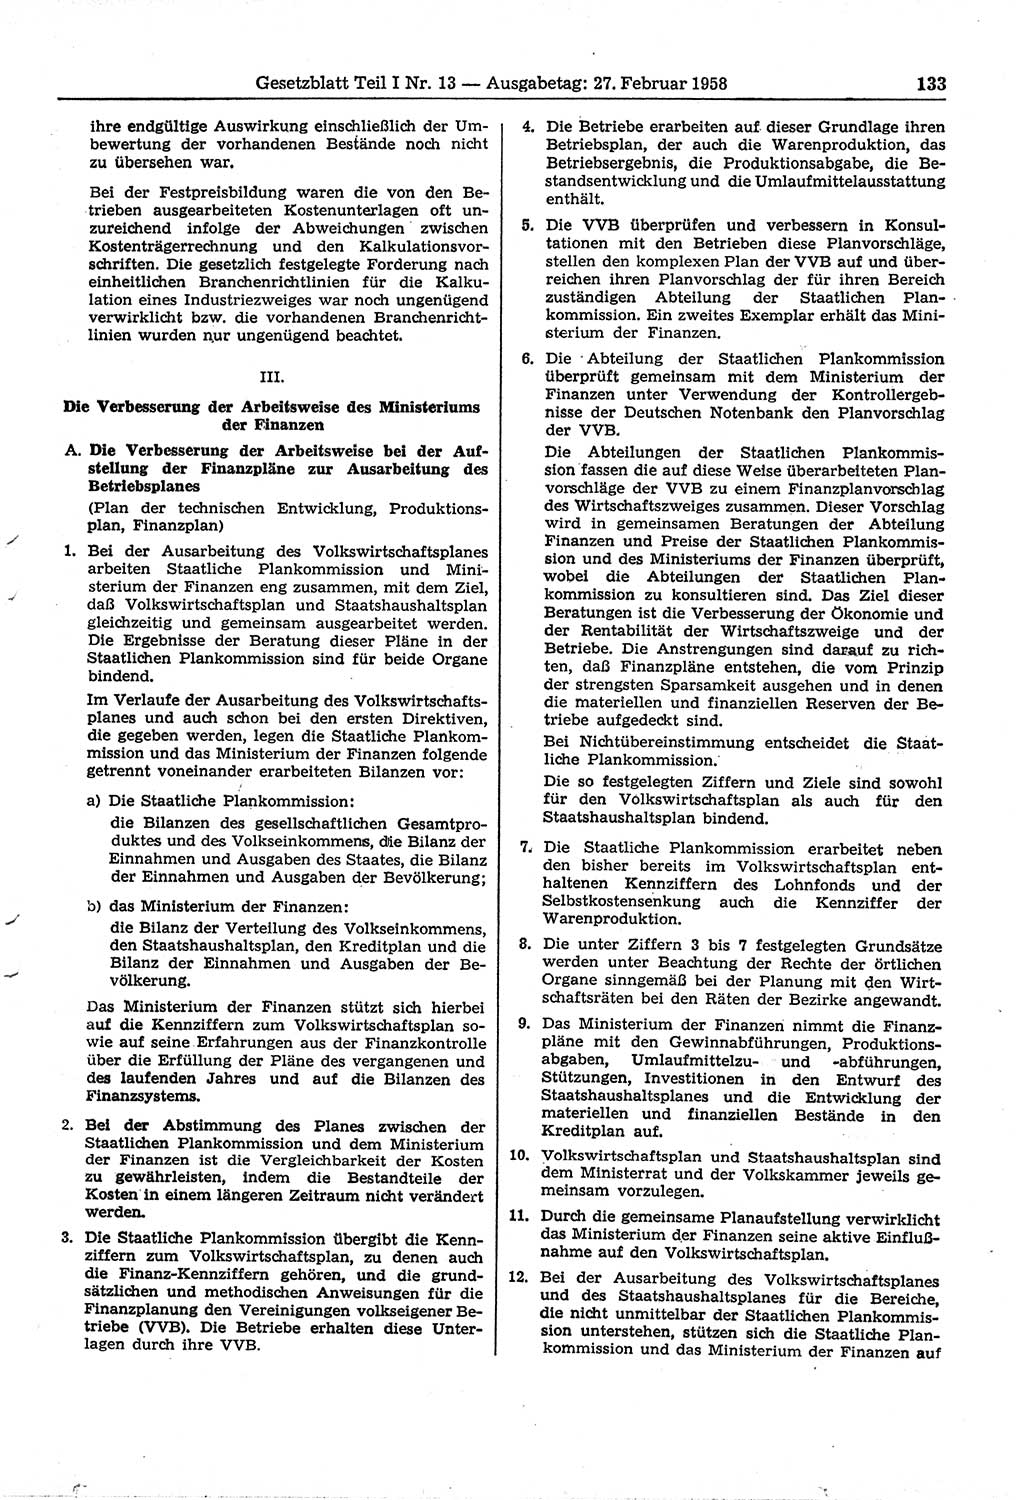 Gesetzblatt (GBl.) der Deutschen Demokratischen Republik (DDR) Teil Ⅰ 1958, Seite 133 (GBl. DDR Ⅰ 1958, S. 133)